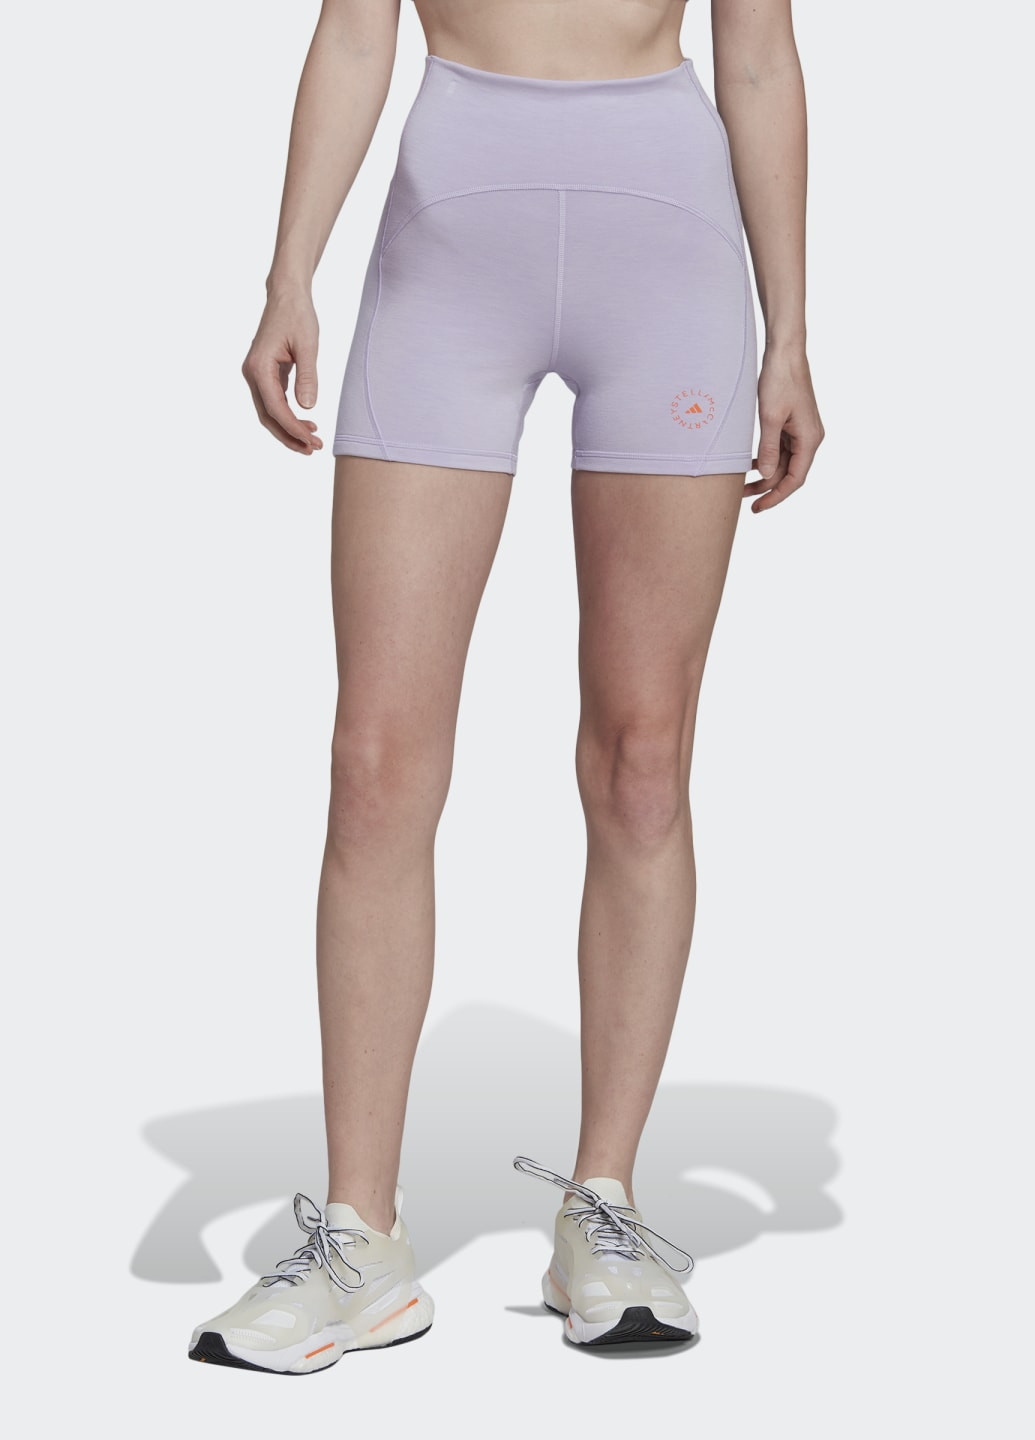 Фиолетовые демисезонные леггинсы by stella mccartney truestrength yoga adidas